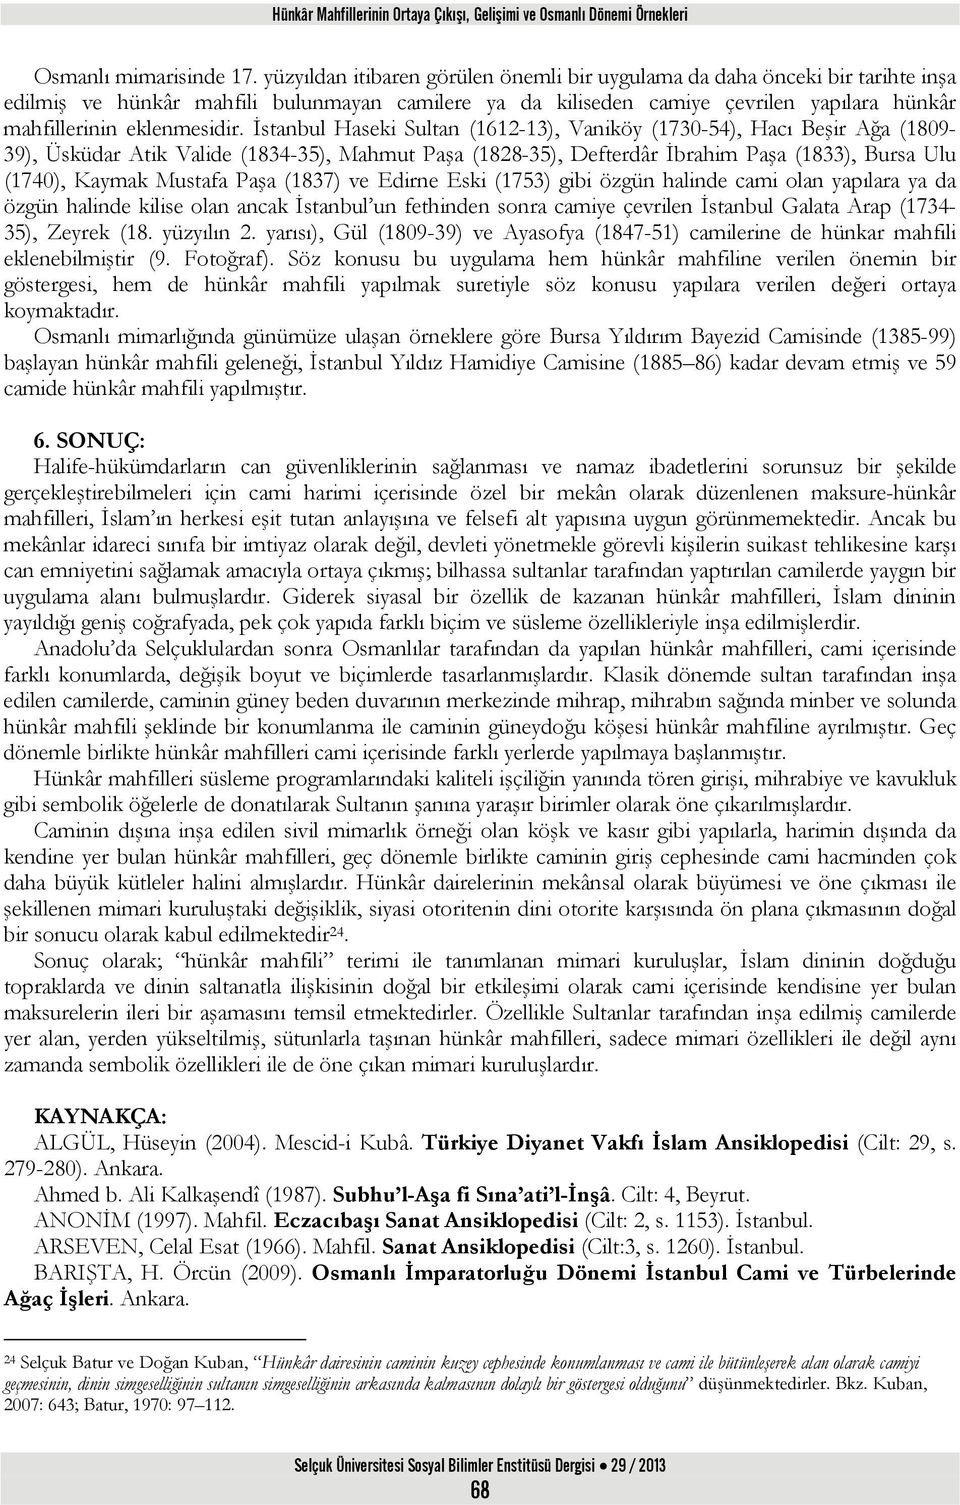 İstanbul Haseki Sultan (1612-13), Vaniköy (1730-54), Hacı Beşir Ağa (1809-39), Üsküdar Atik Valide (1834-35), Mahmut Paşa (1828-35), Defterdâr İbrahim Paşa (1833), Bursa Ulu (1740), Kaymak Mustafa